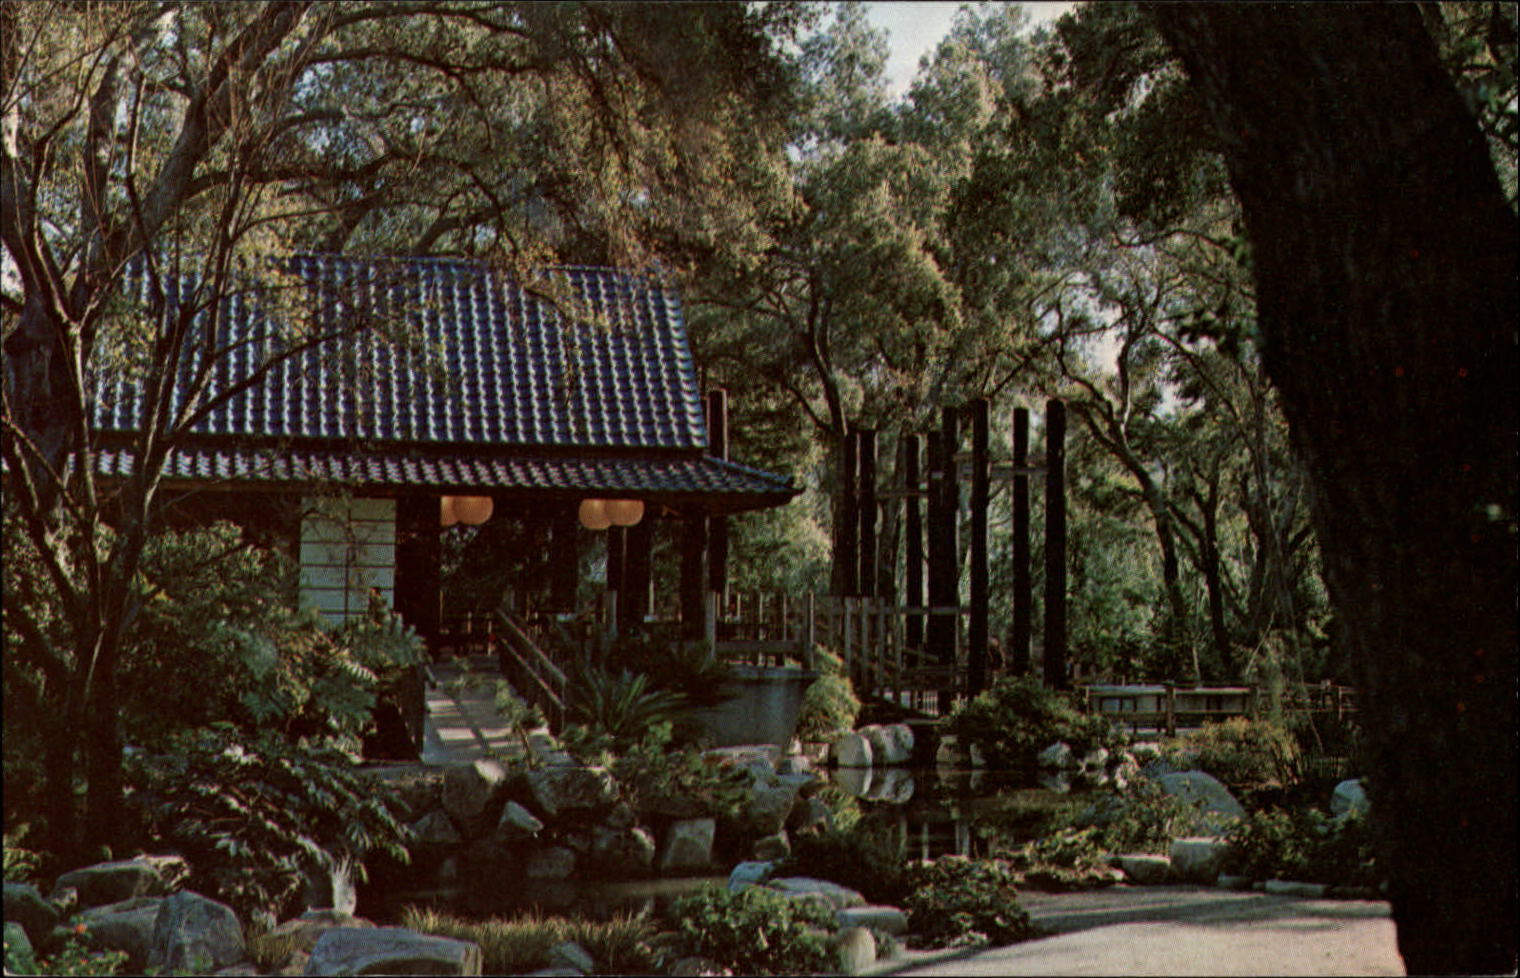 Japanese Garden Descanso Gardens La Canada California ~ 1950-60 vintage postcard